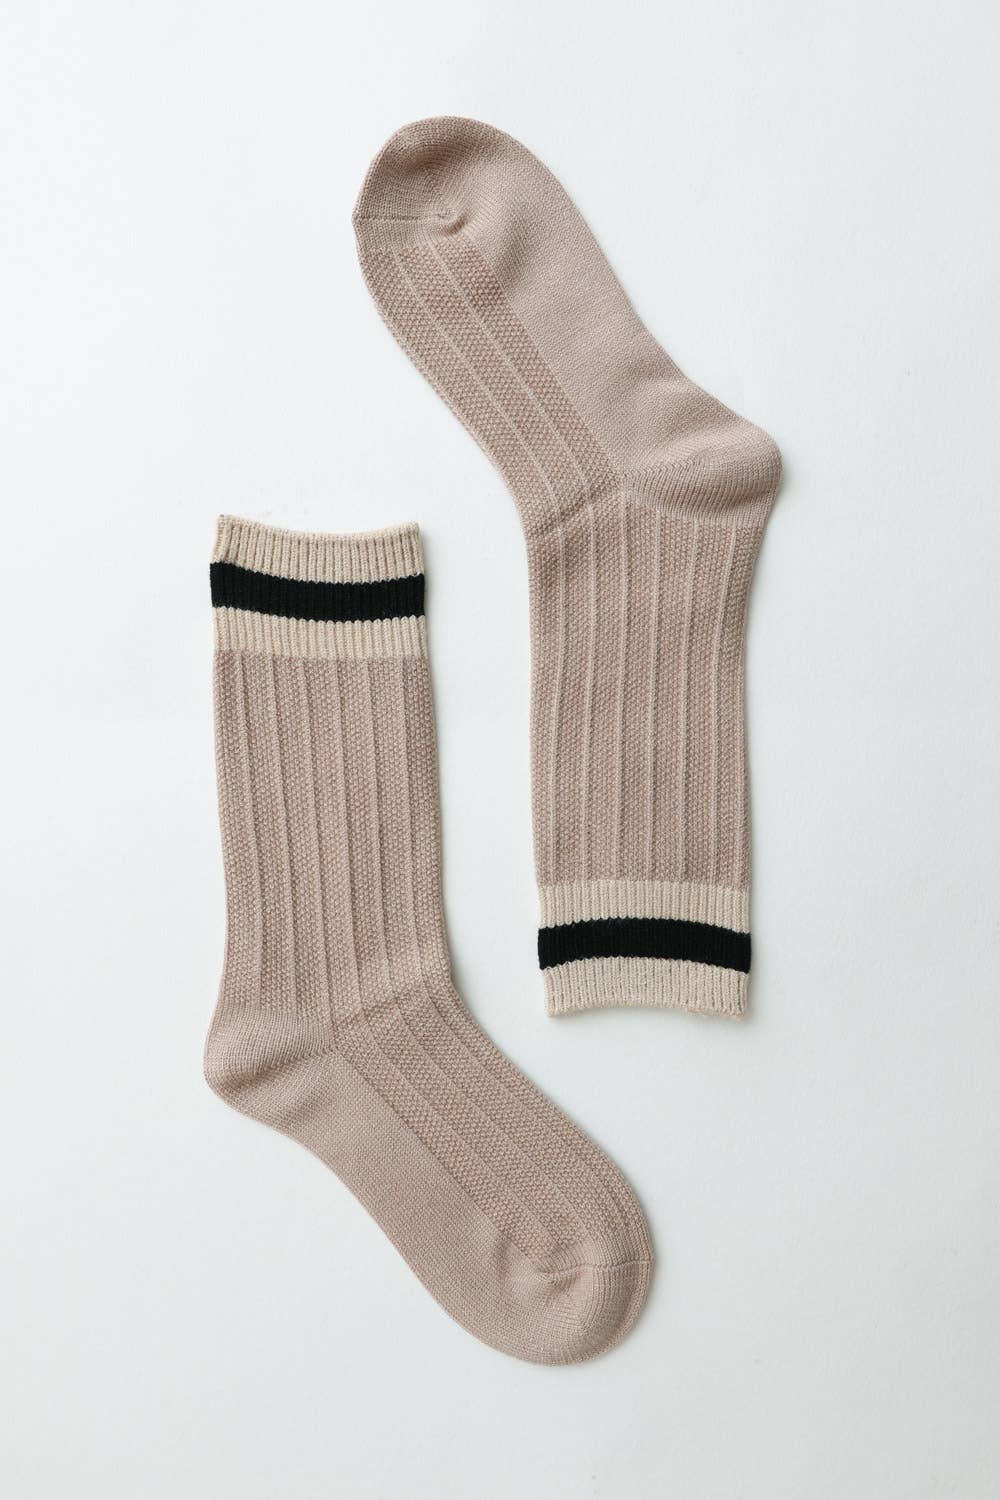 Color Block Socks: Tan